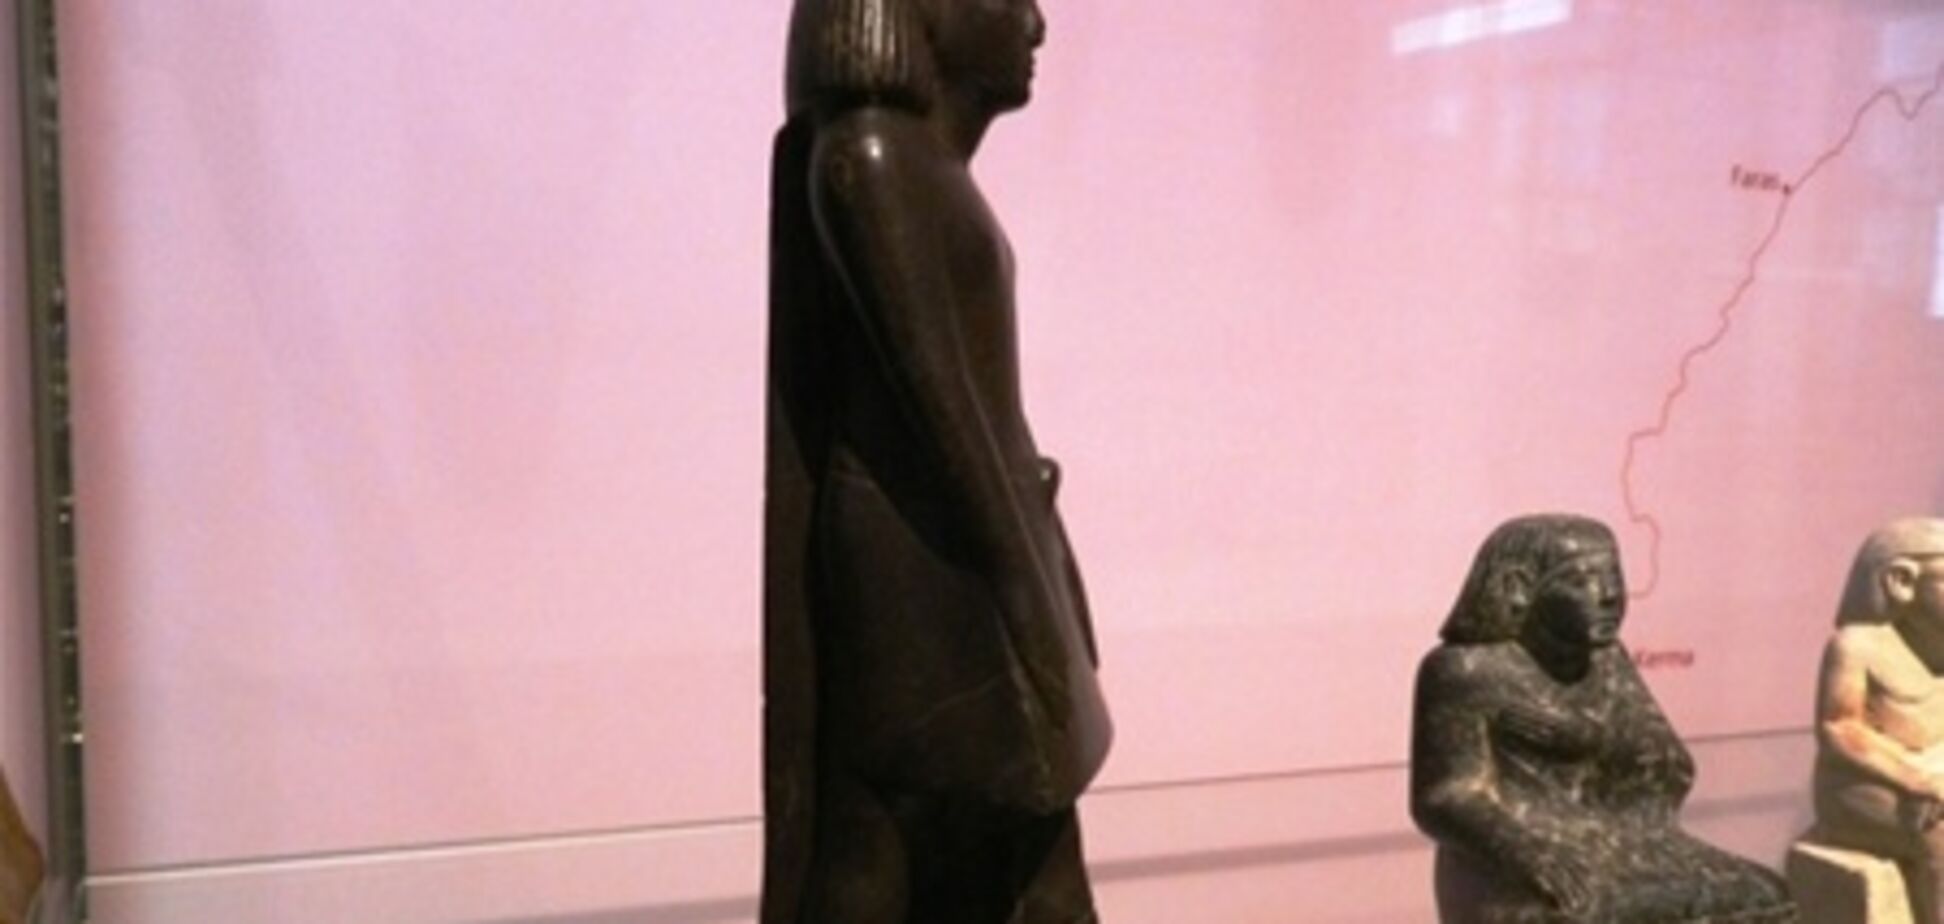 Проклятие фараонов: в музее египетская статуя стала крутиться